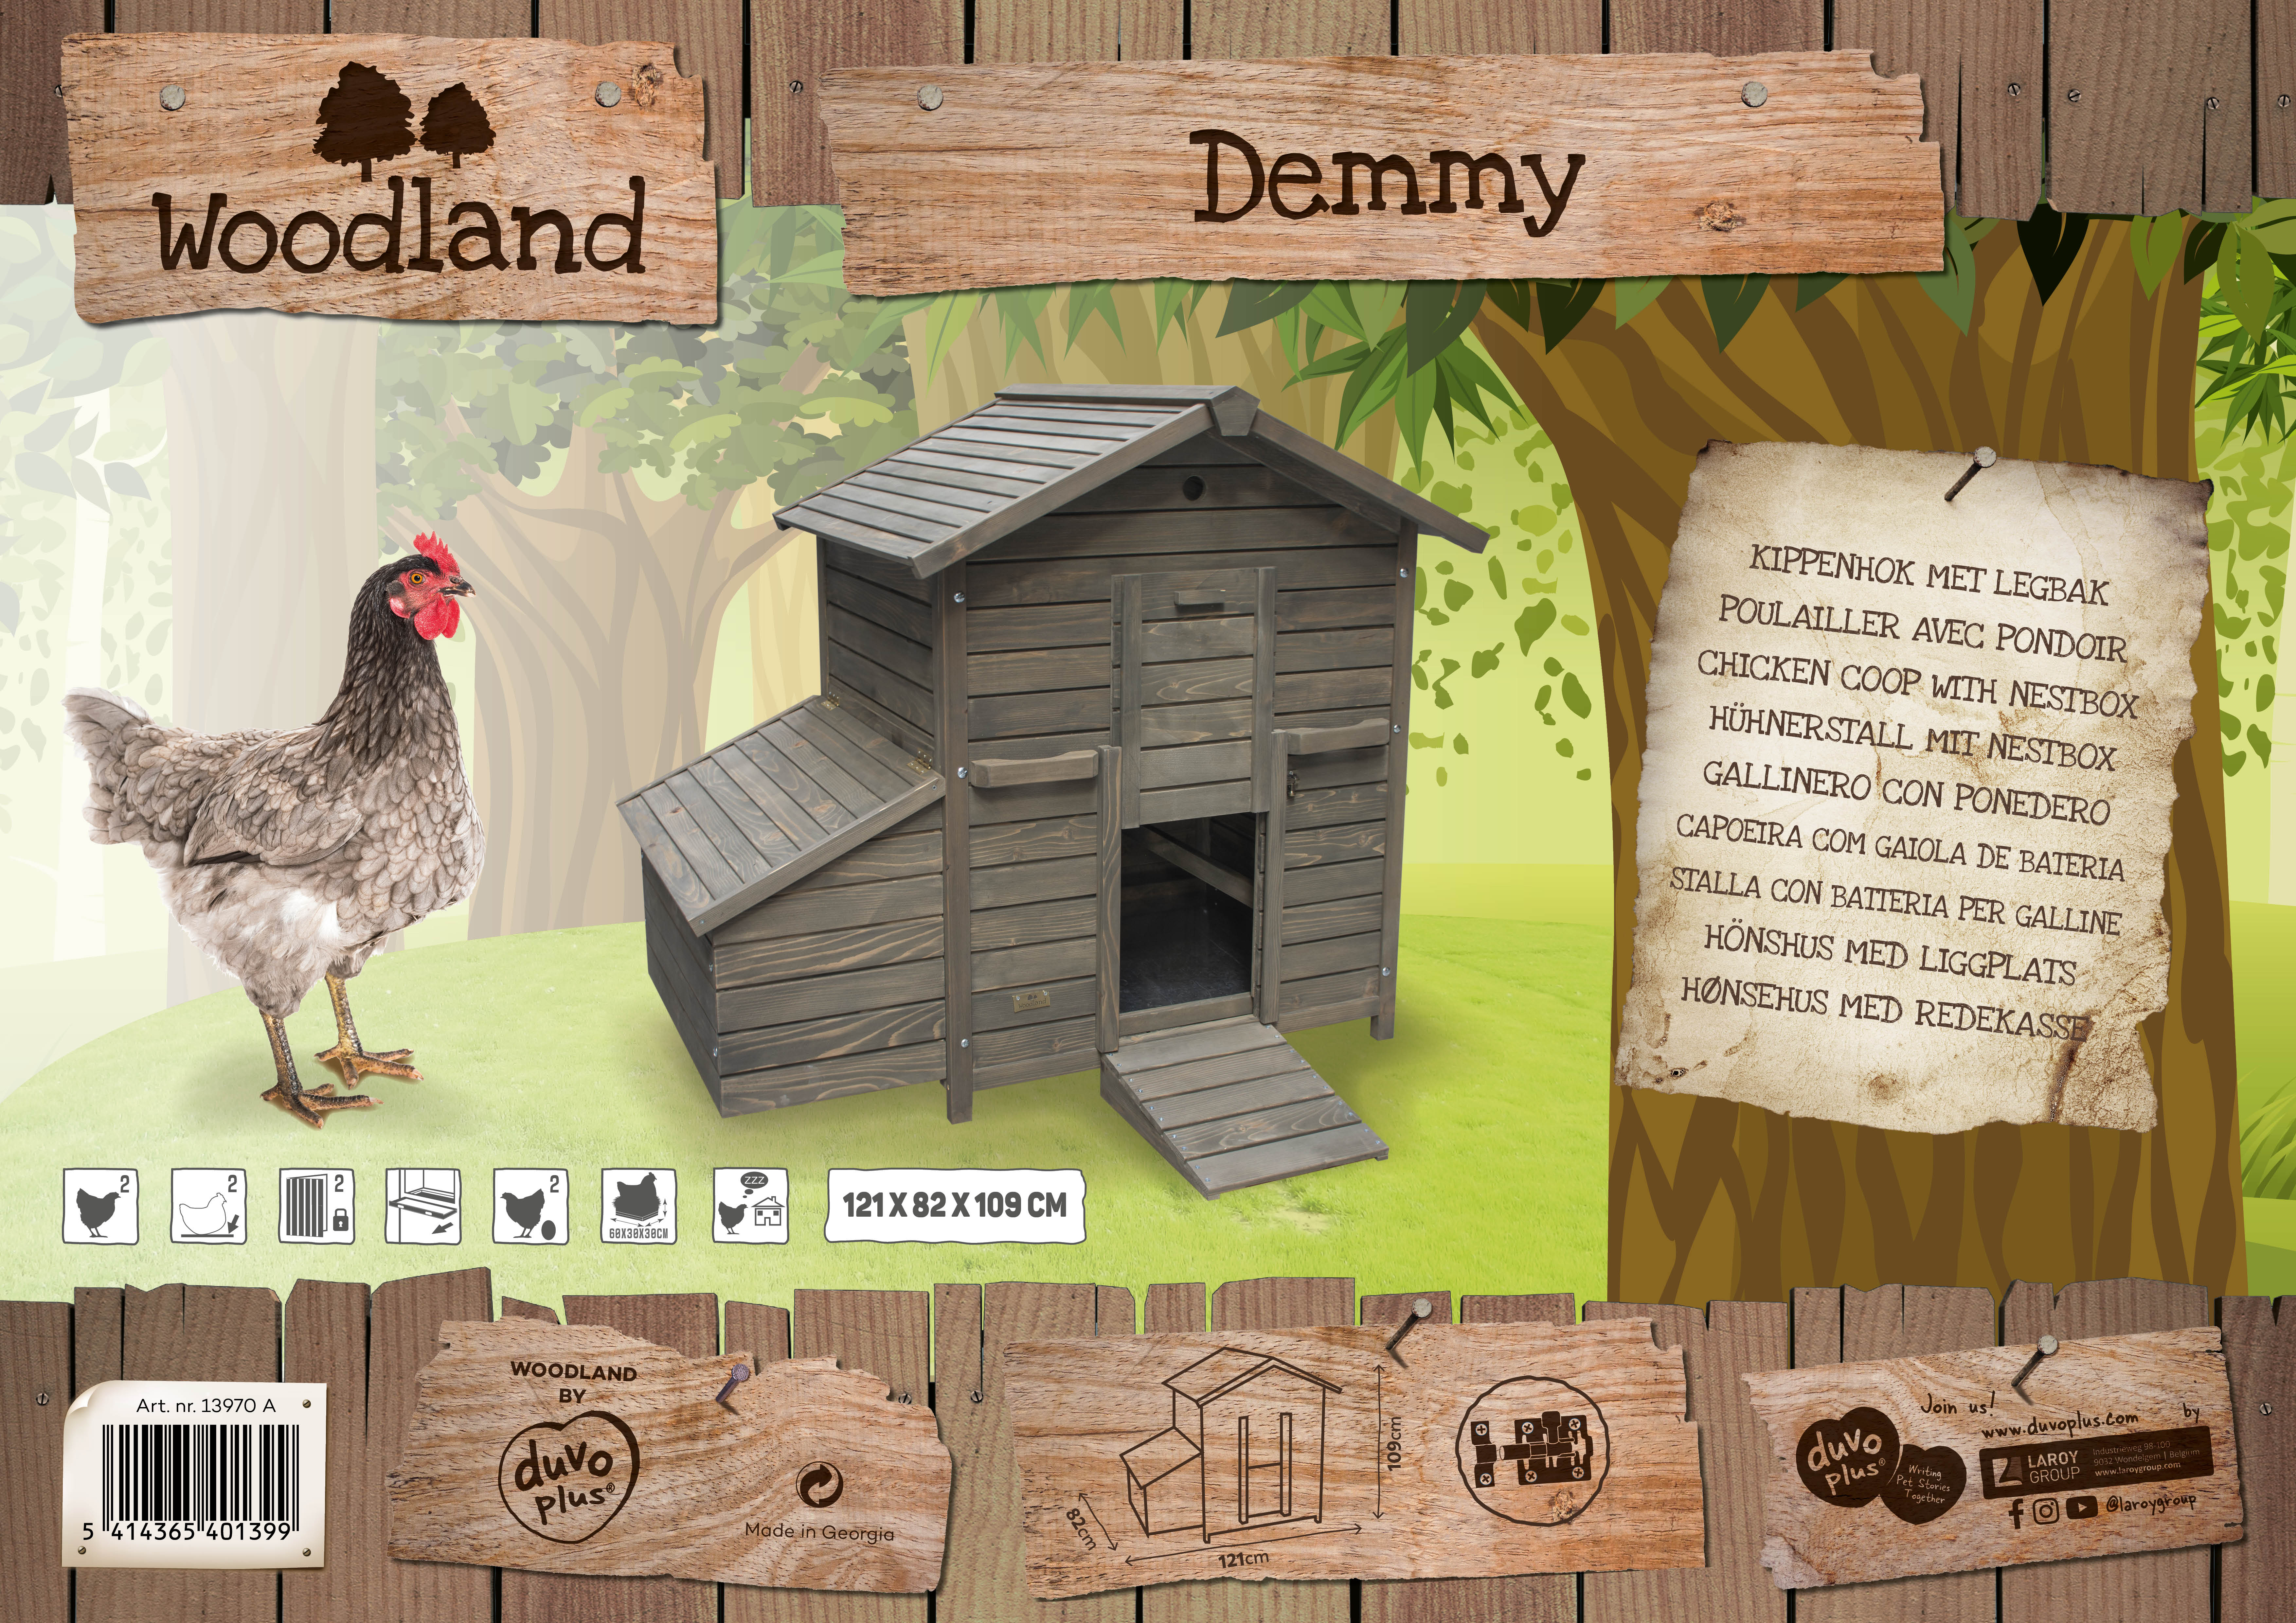 Woodland kippenhokken - Nieuws Detail - Laroy Group Uitmuntend in huisdierproducten